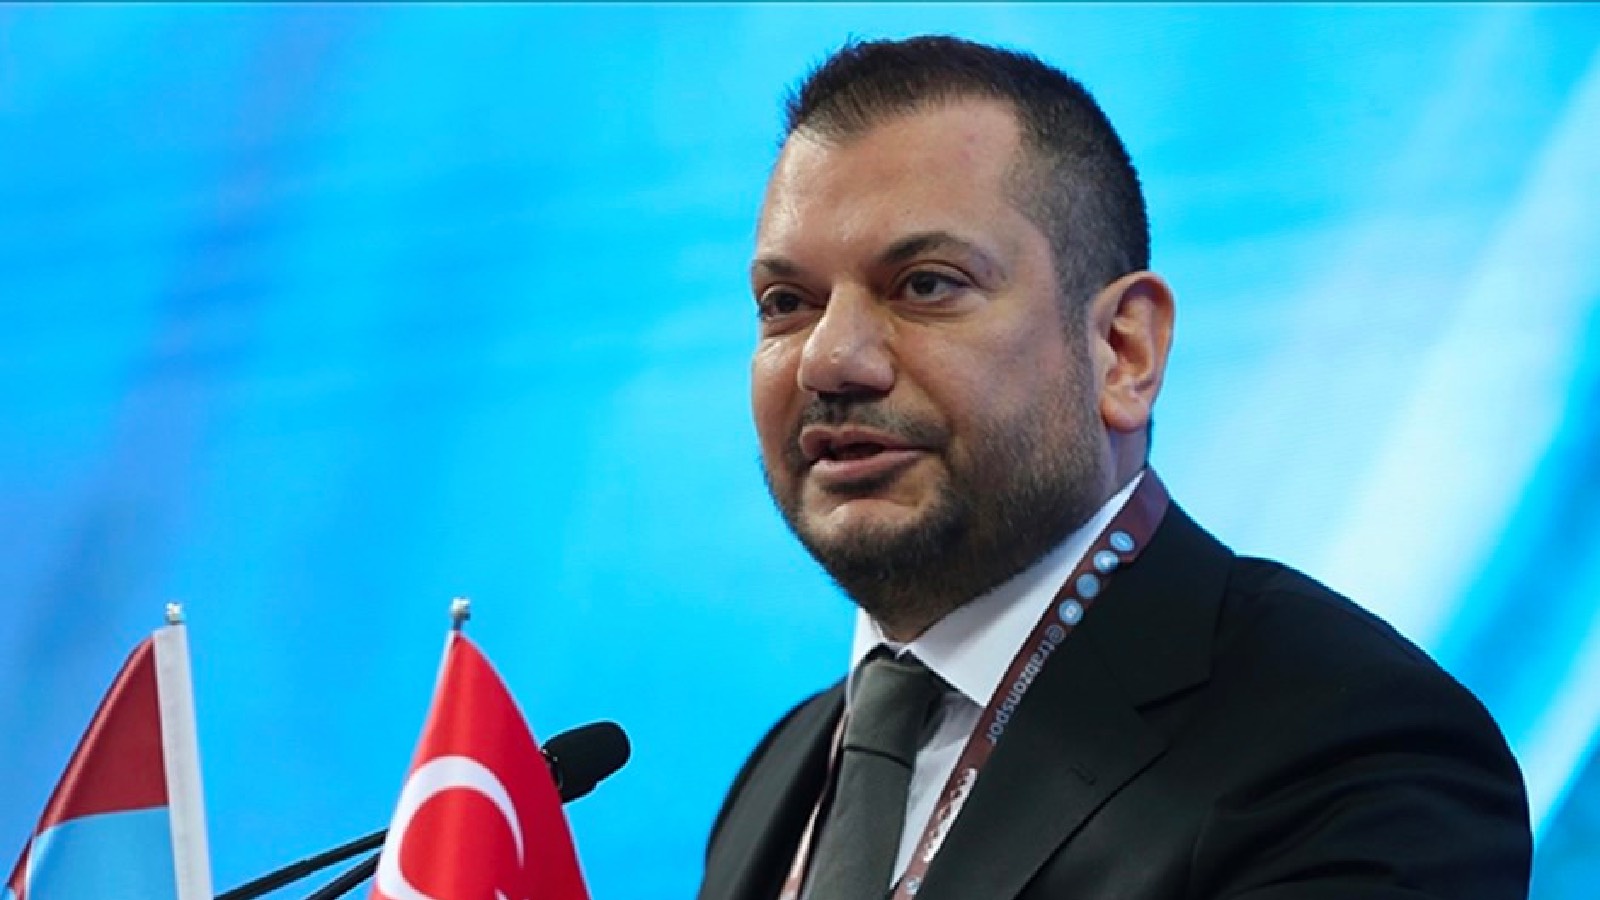 Trabzonspor Başkanı Ertuğrul Doğan'dan açıklama: Hiç kimse ya da herhangi bir kurum Trabzonspor’un şerefli taraftarını dünkü olayların önüne meze etmeye kalkışmasın